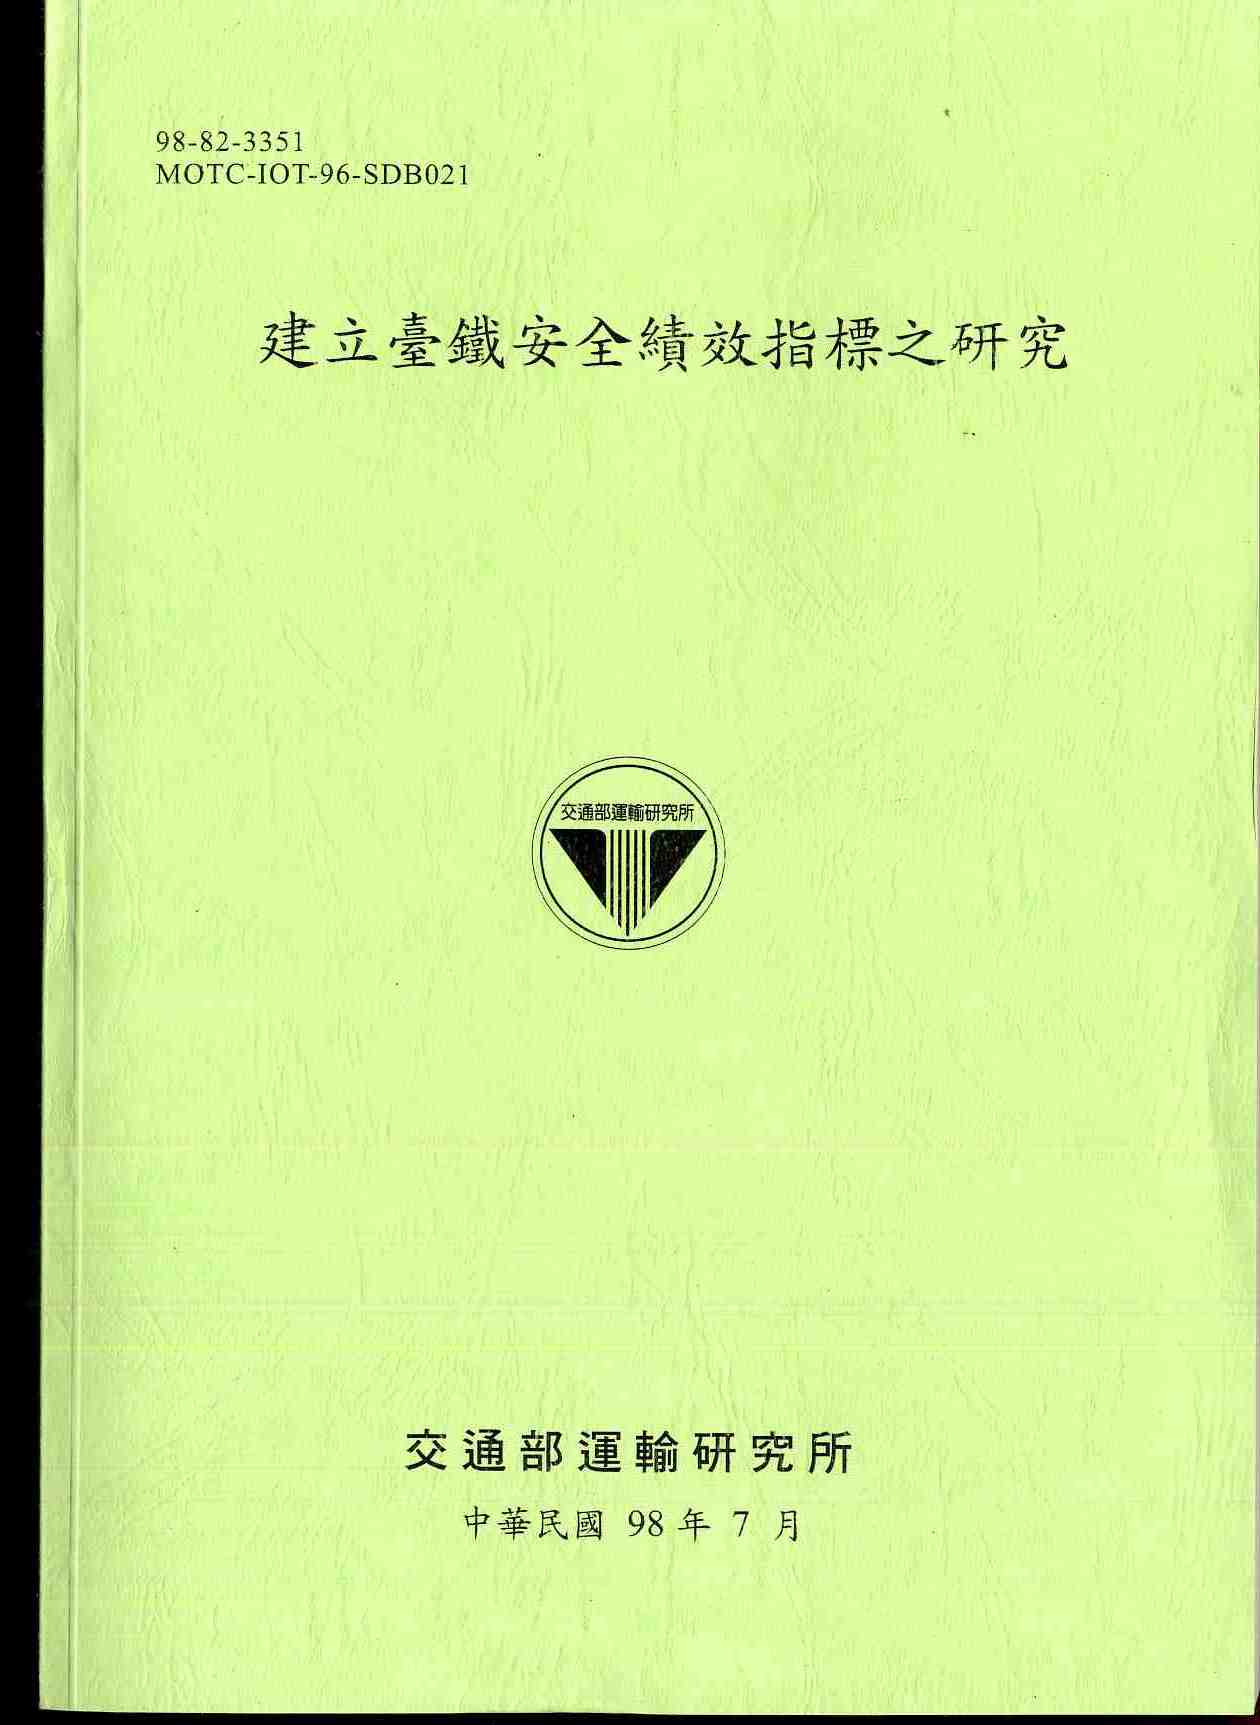 建立臺鐵安全績效指標之研究